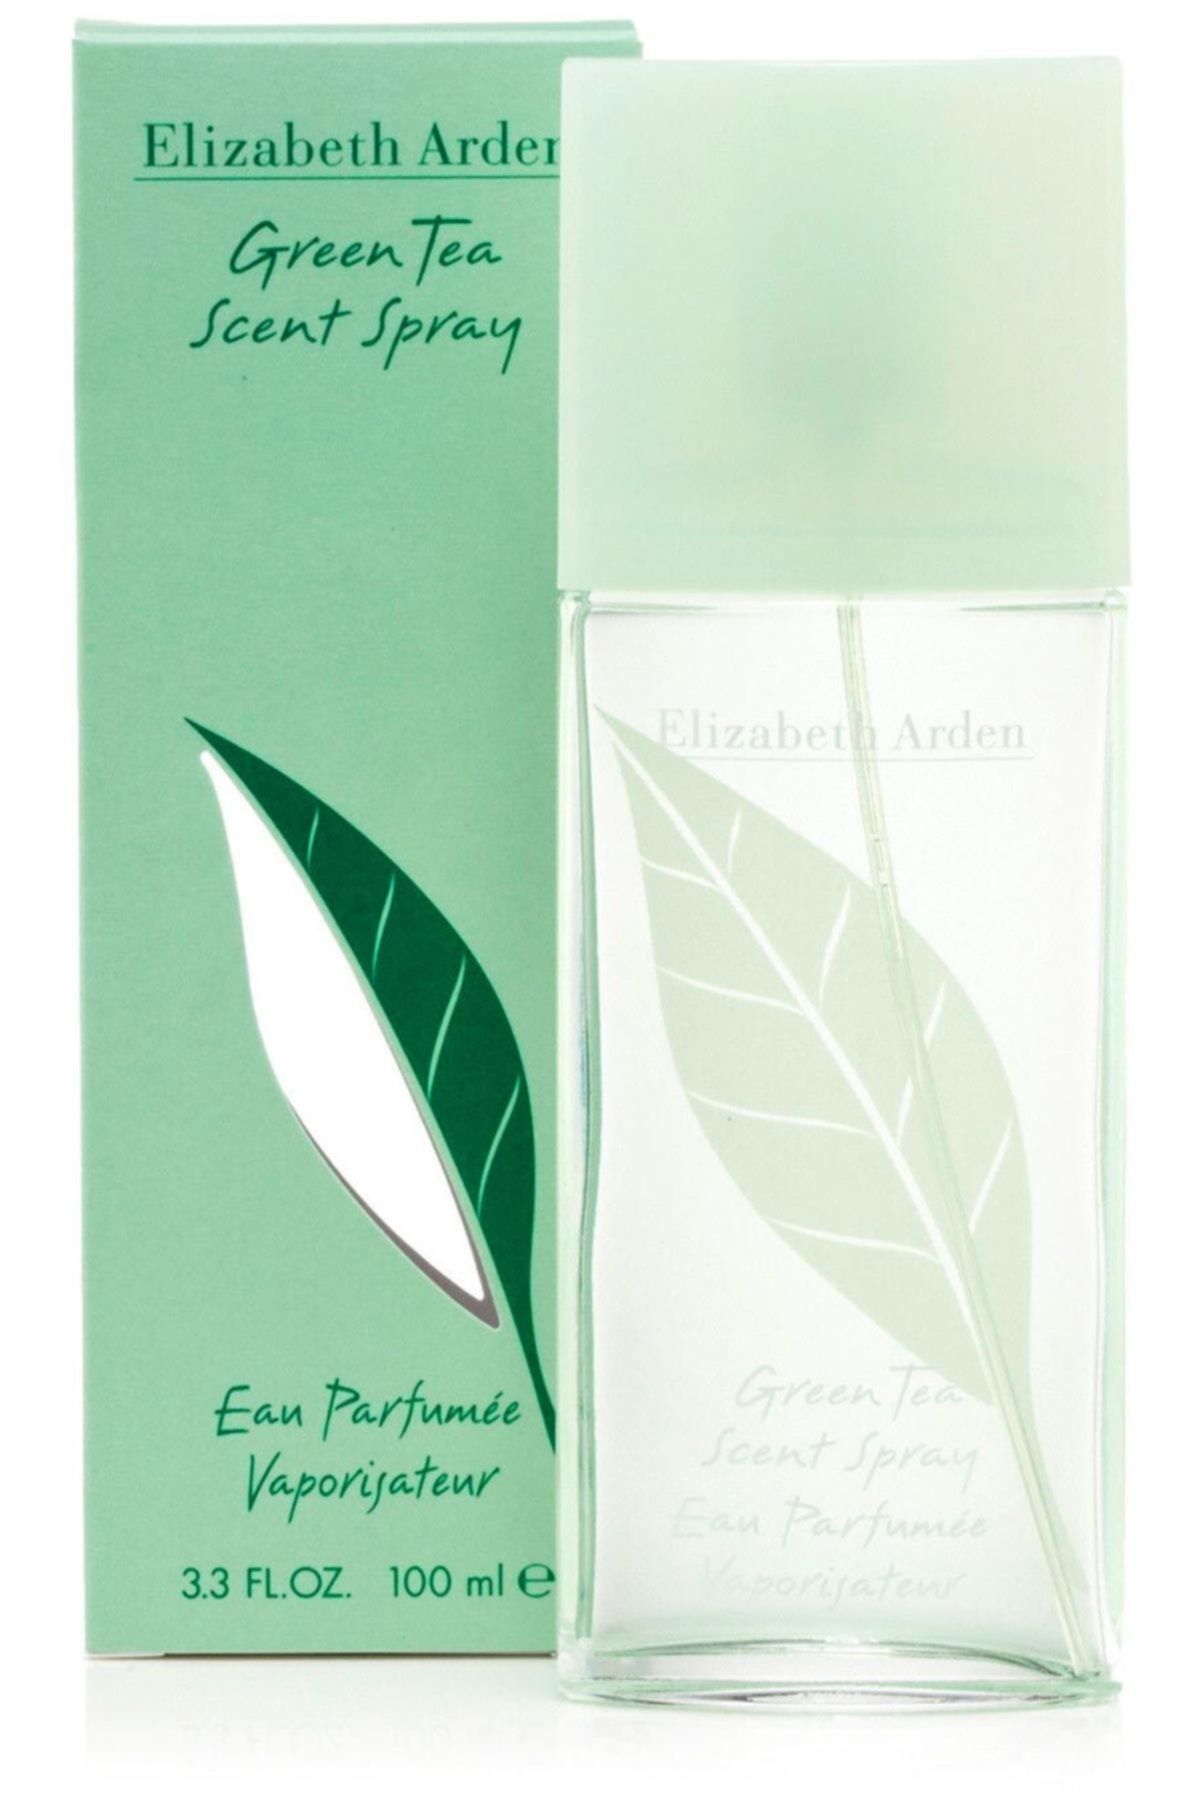 Elizabeth Arden Marka: Green Tea Edt Kadın Parfümü 100ml Kategori: Deodorant